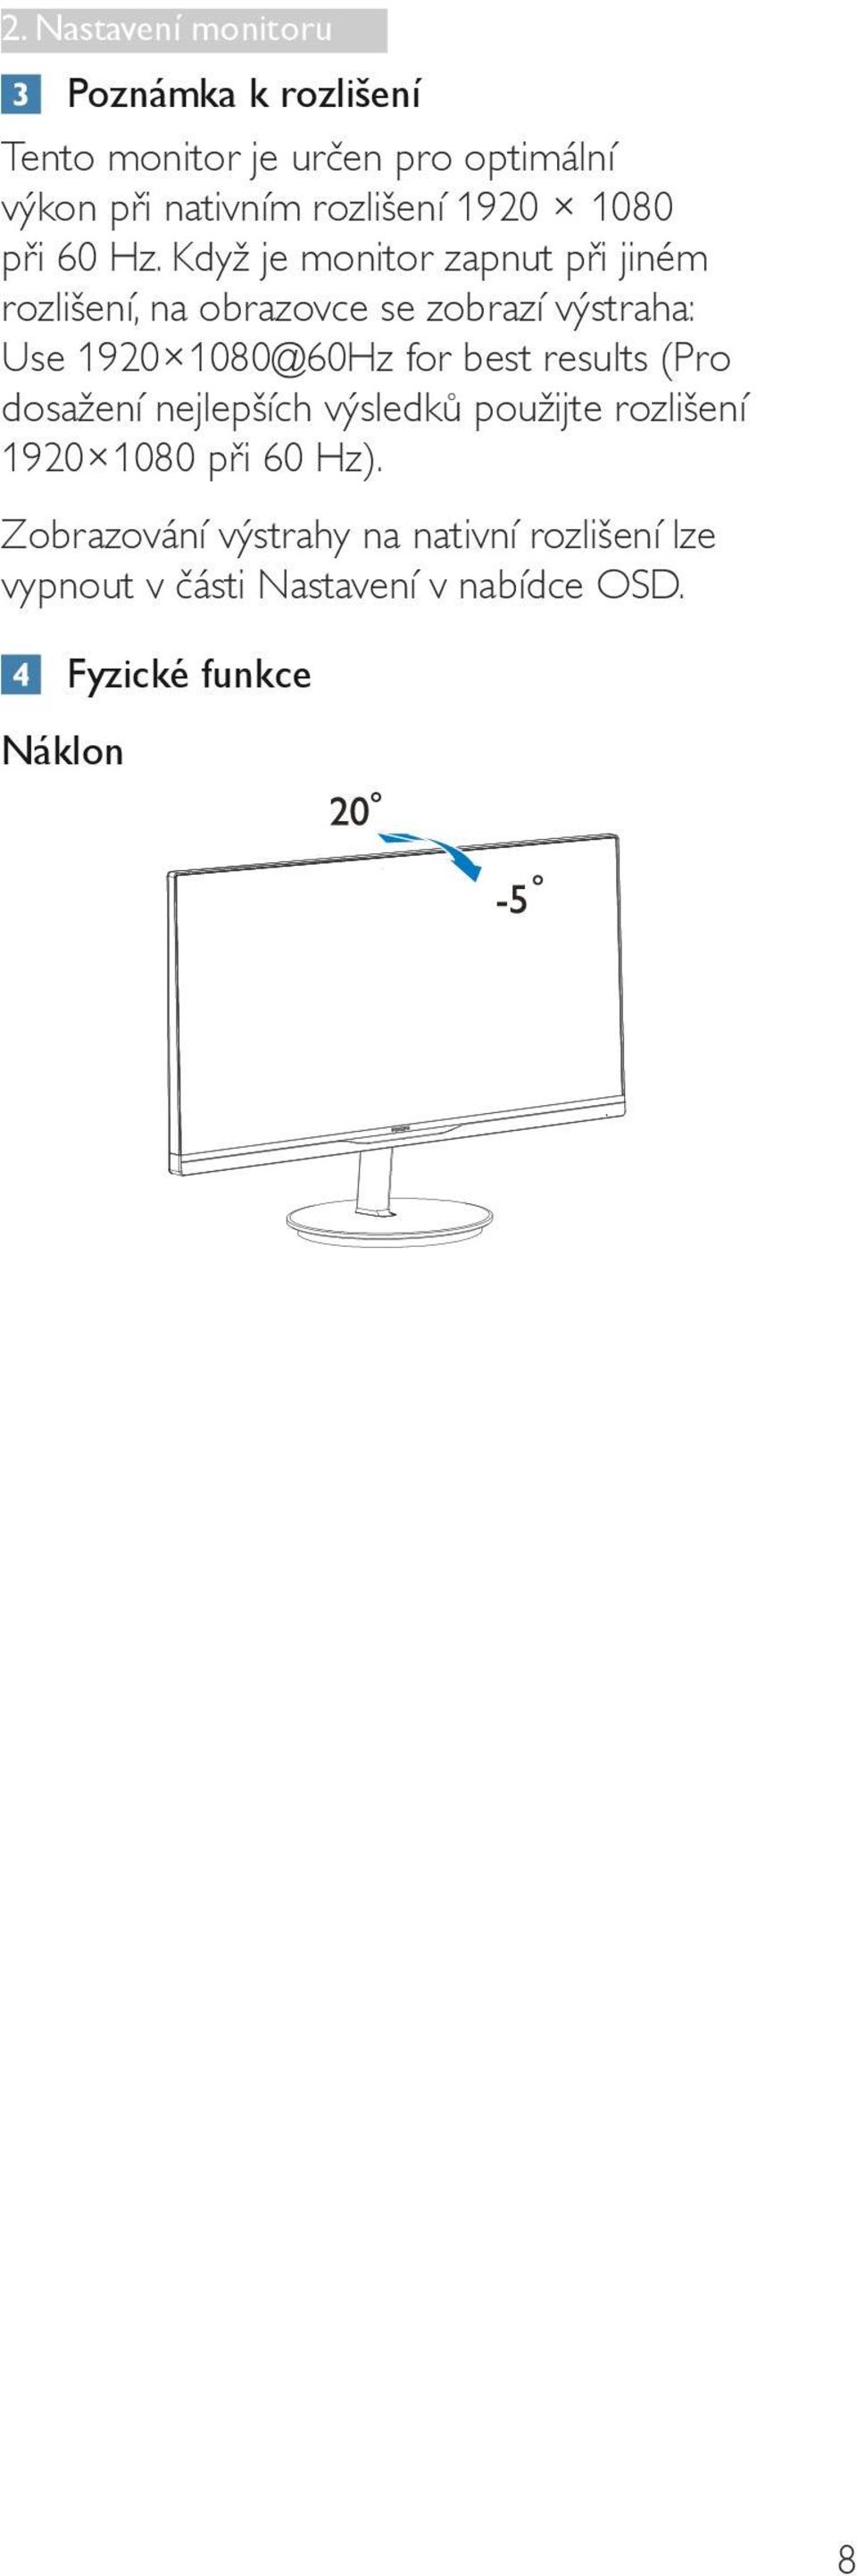 Když je monitor zapnut při jiném rozlišení, na obrazovce se zobrazí výstraha: Use 1920 1080@60Hz for best